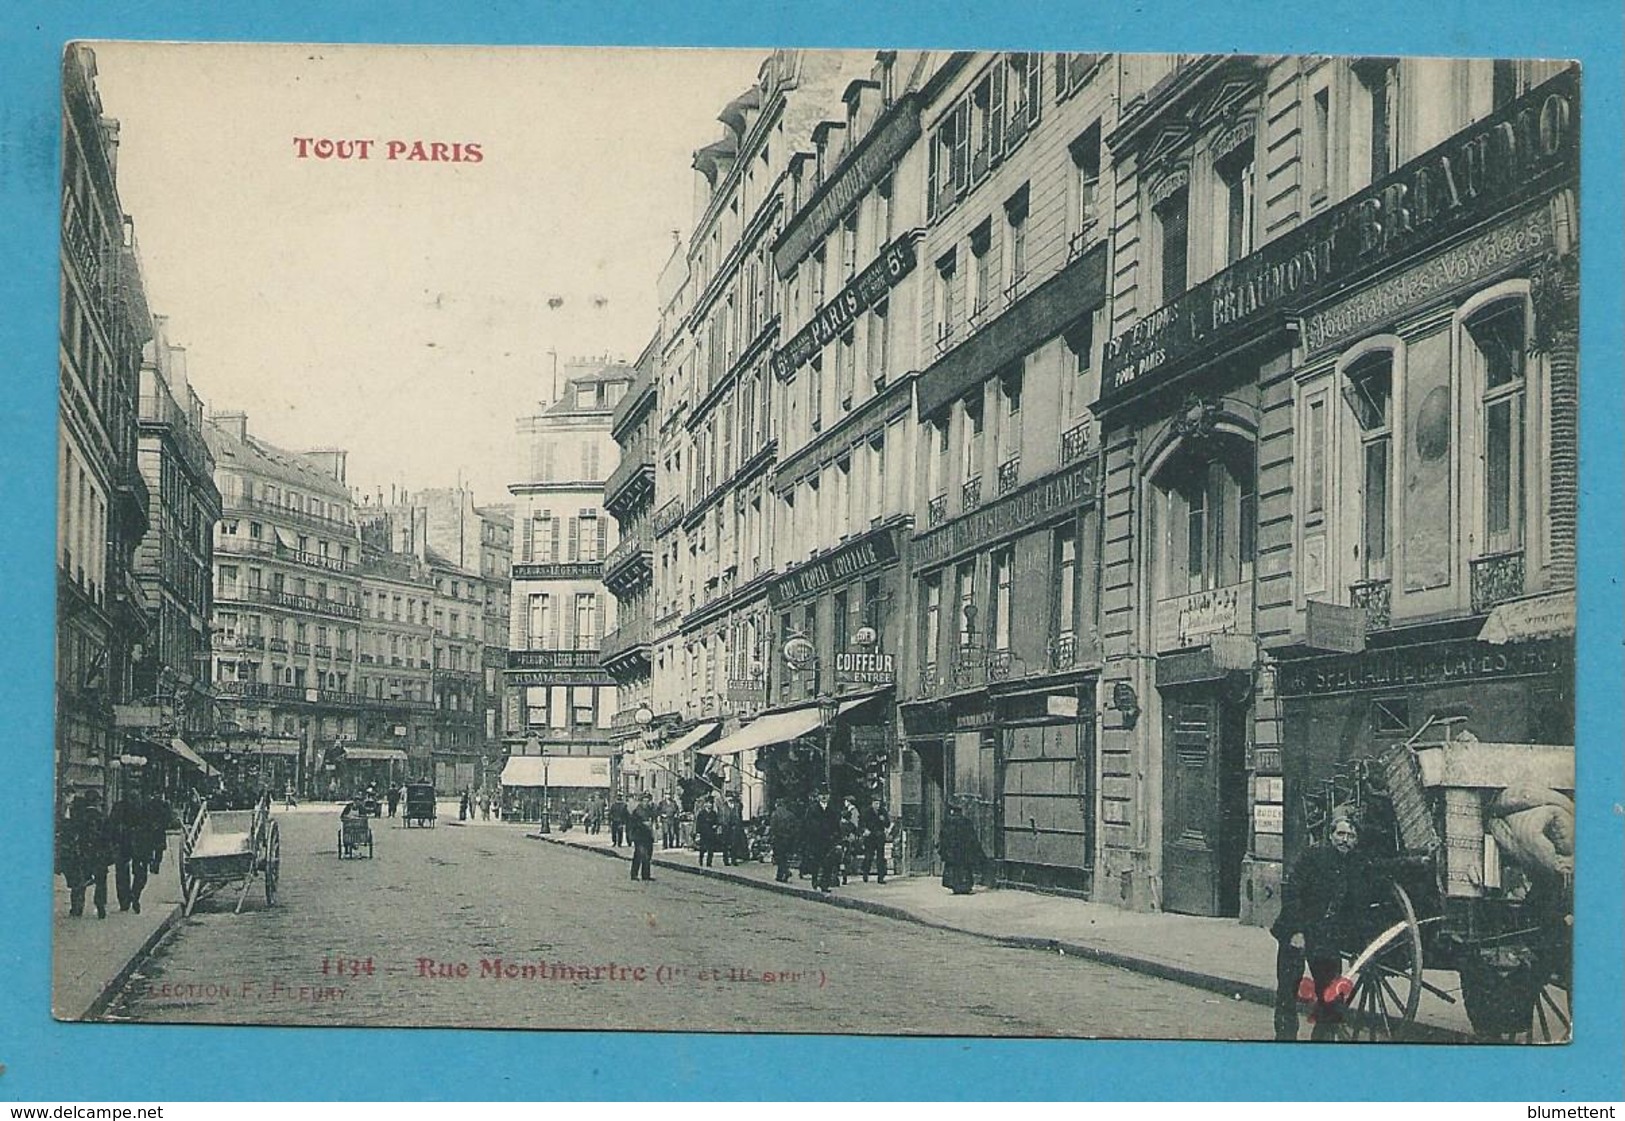 CPA 1134 TOUT PARIS - Rue Montmartre (1er Et IIème Arrt.) Ed.FLEURY - Paris (01)